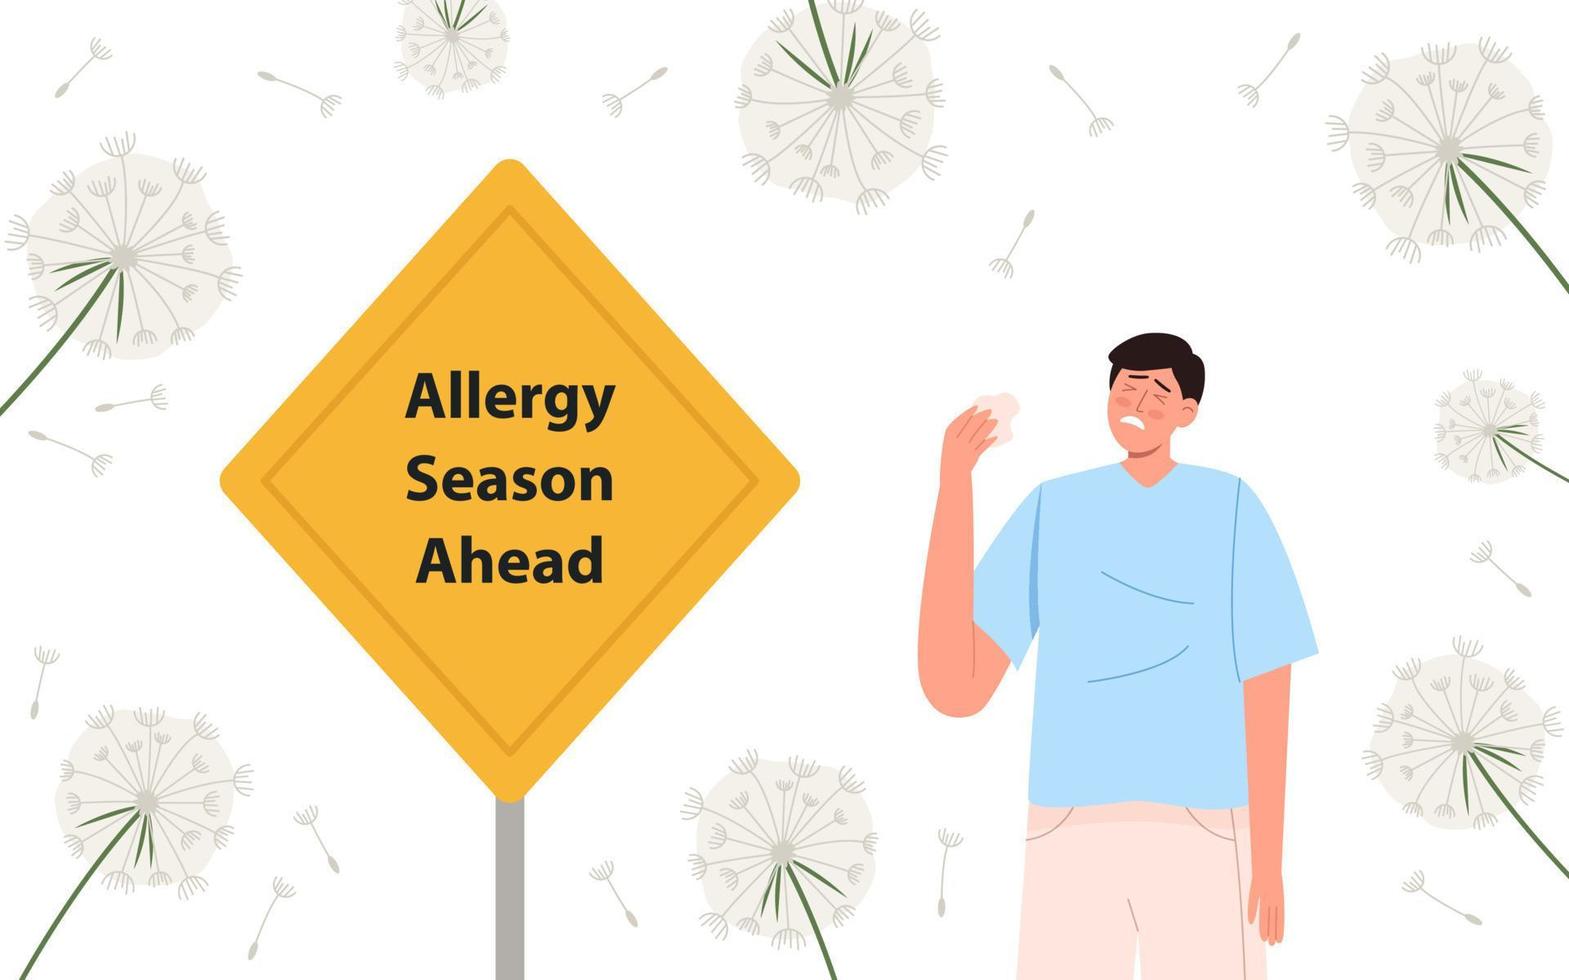 homme allergique au pollen près du panneau jaune vecteur